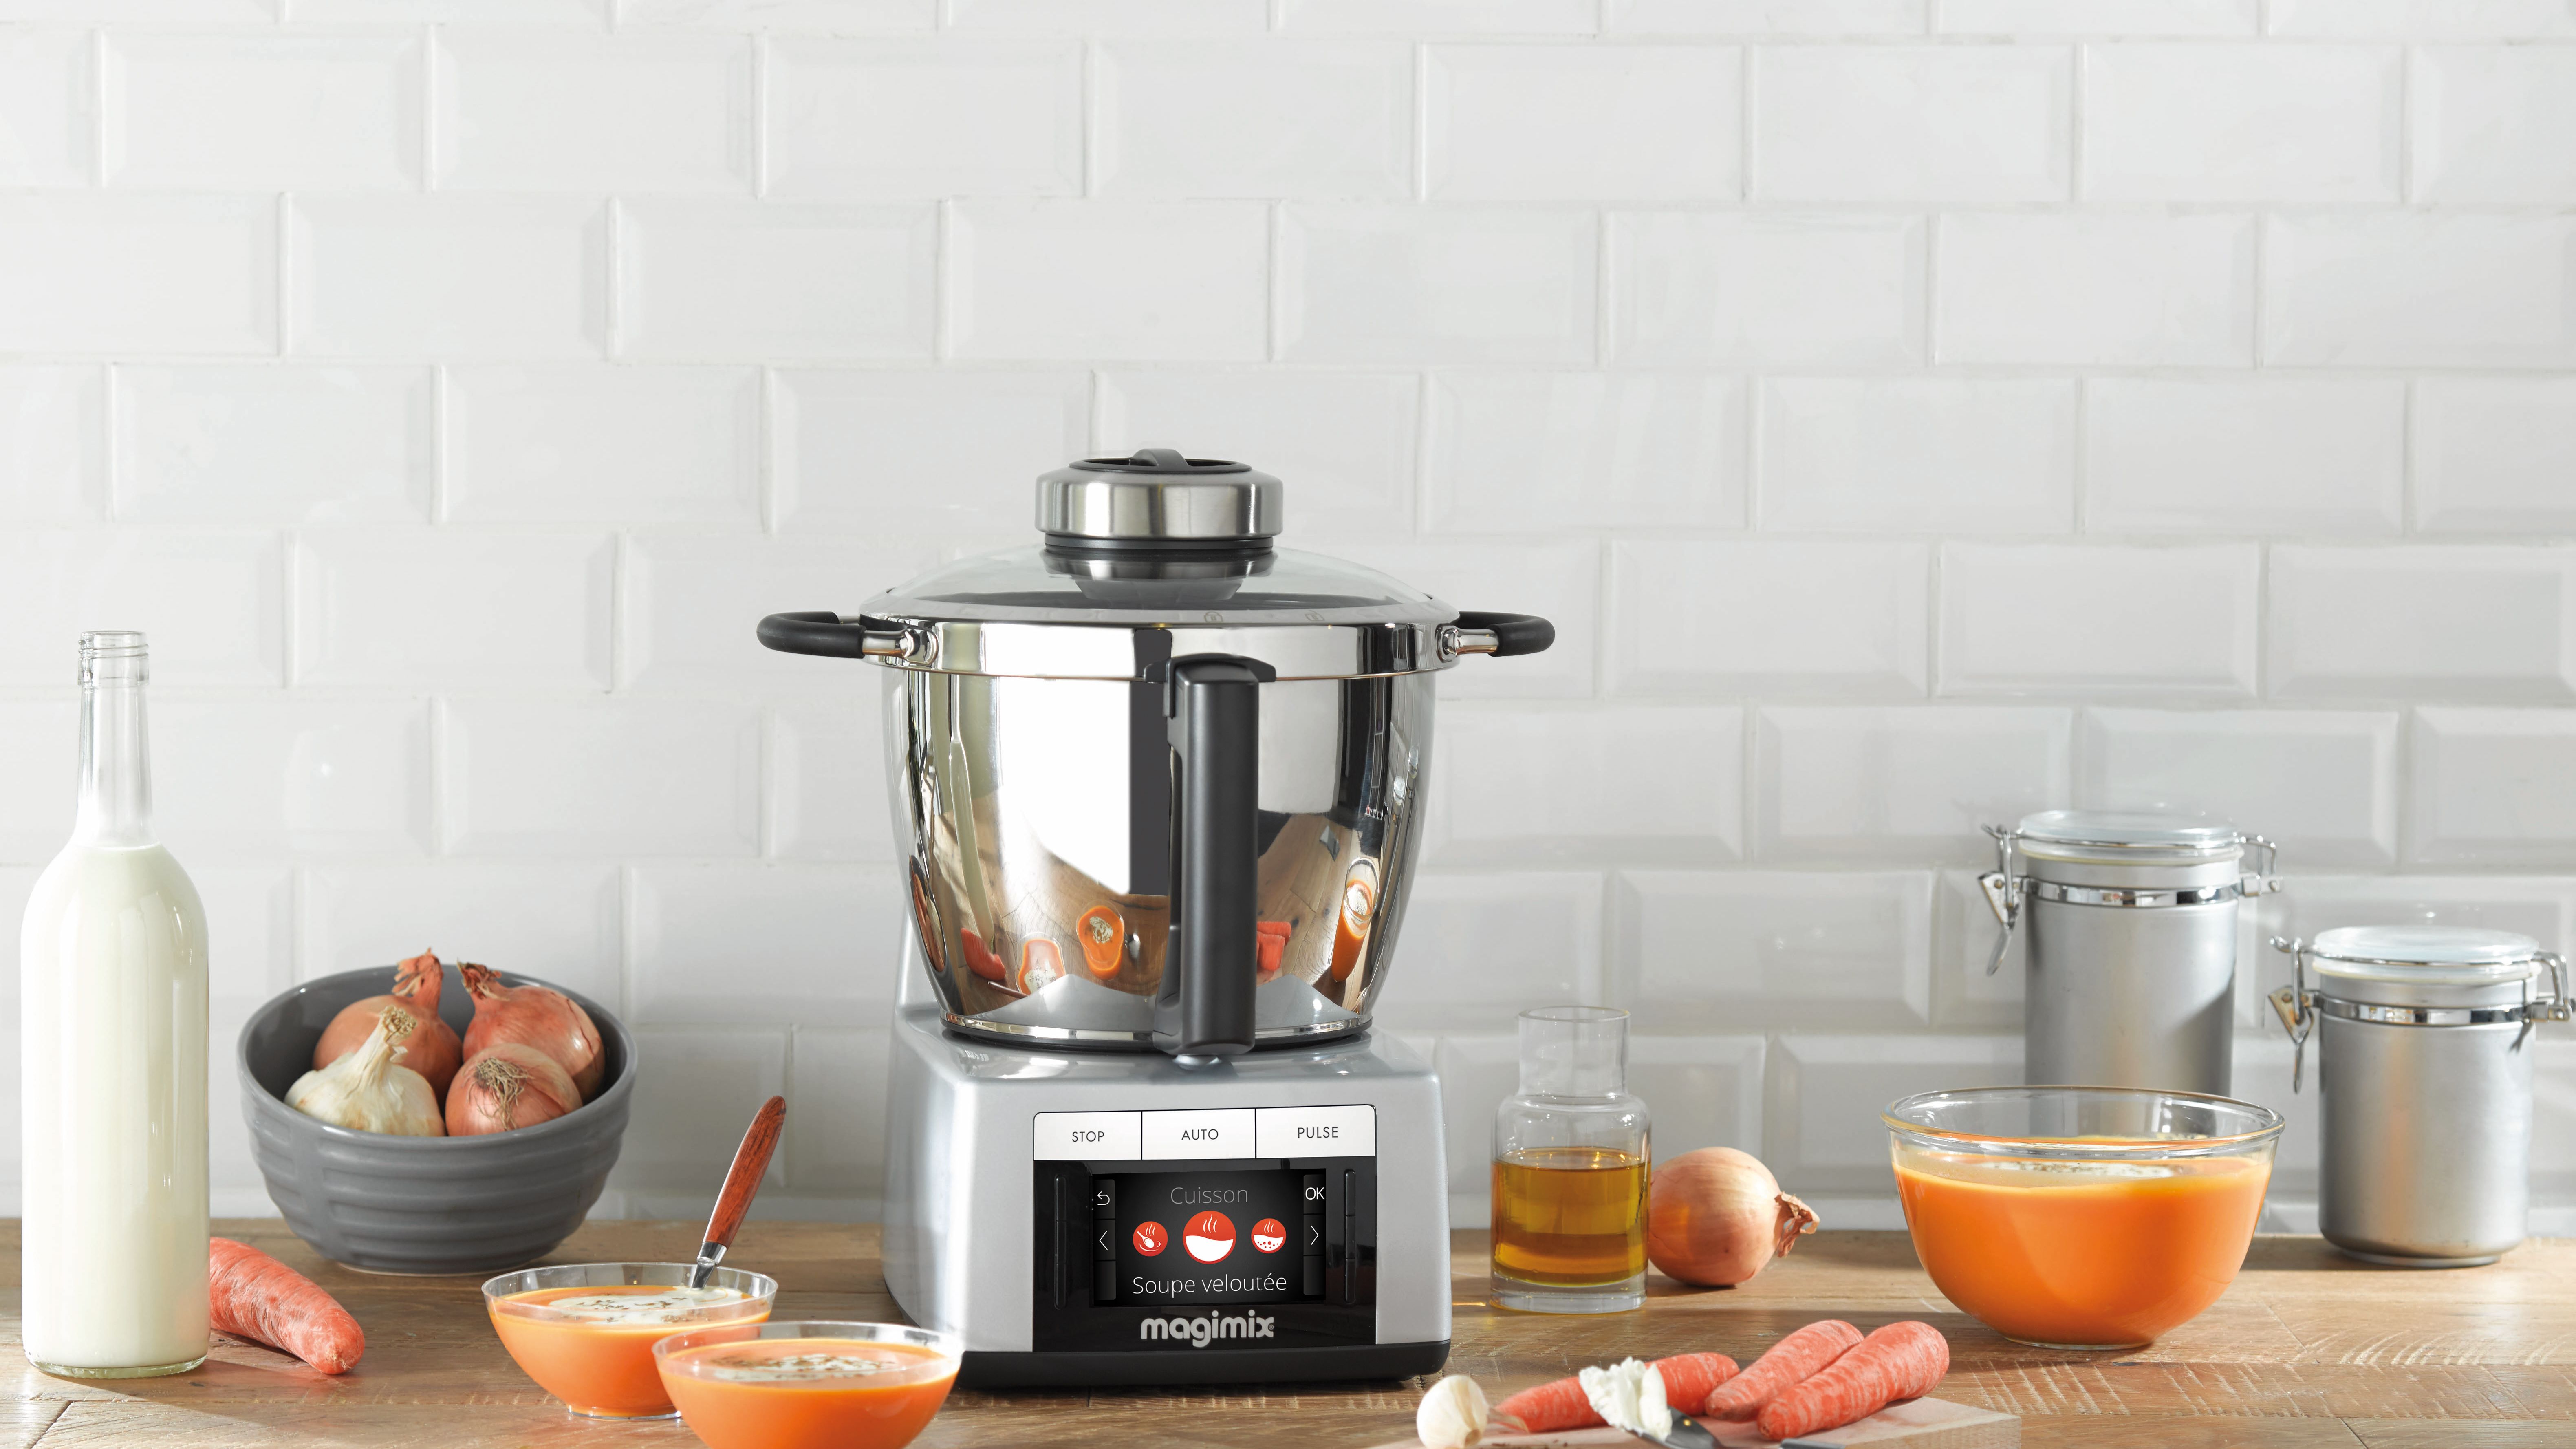 Mixeur Cuiseur 6 en 1 pas cher : cuisson vapeur, mixage et sauces, Robots  et mixeurs